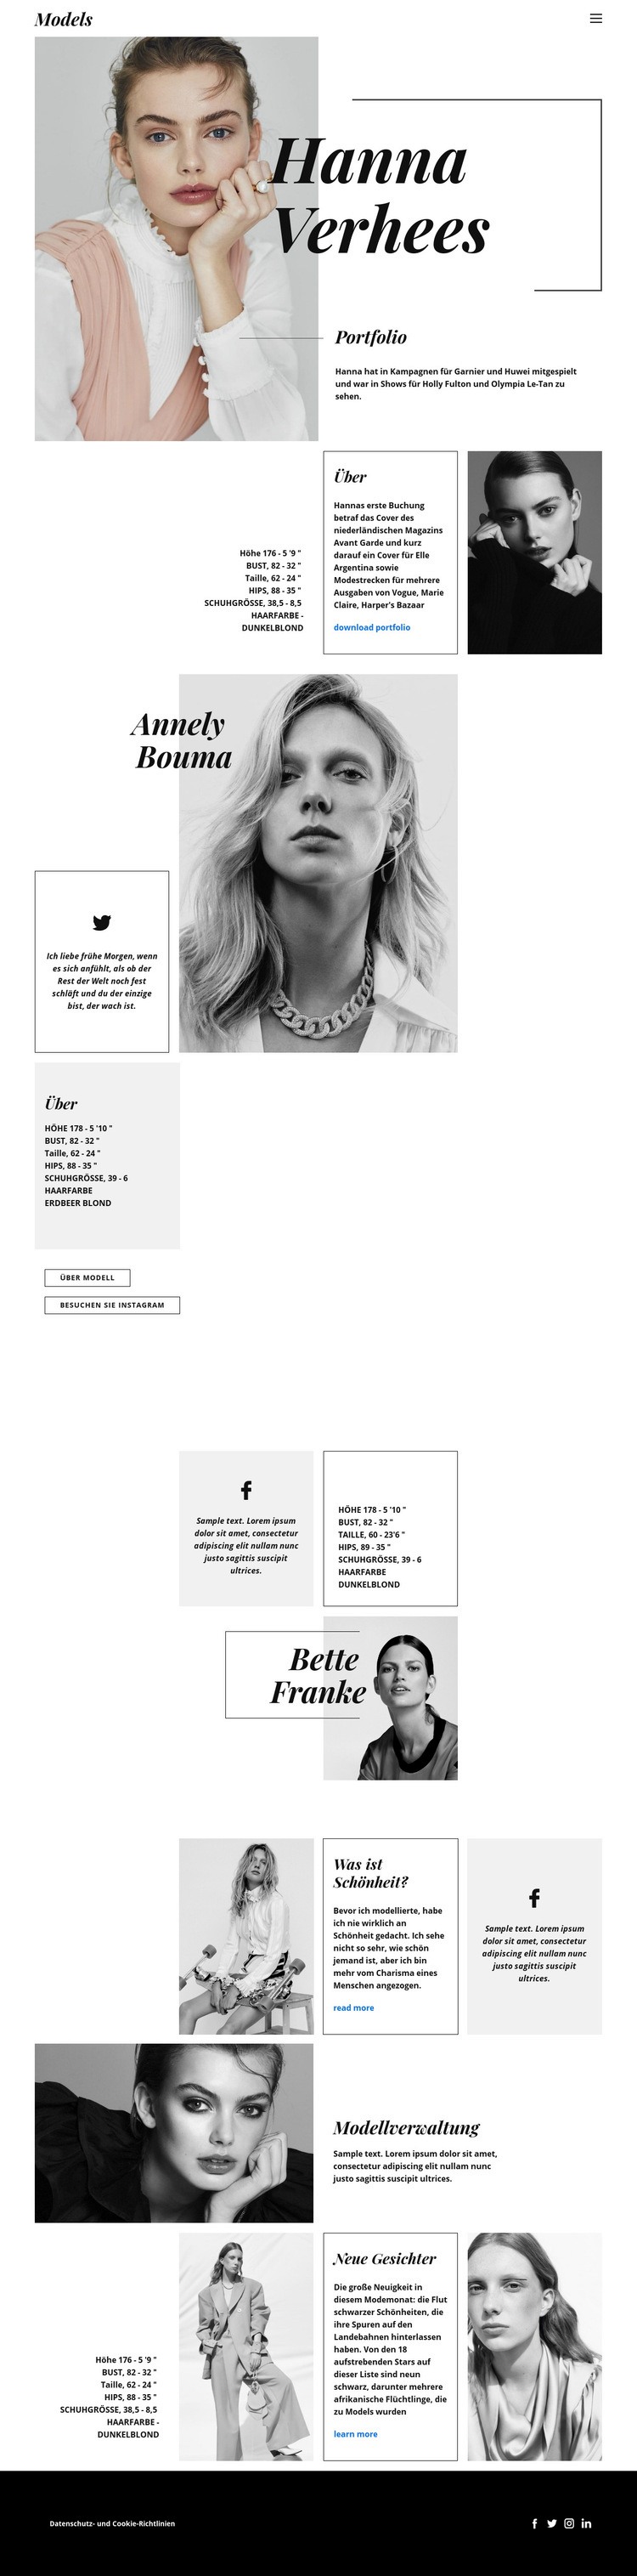 Hanna Verhees Blog Website-Modell